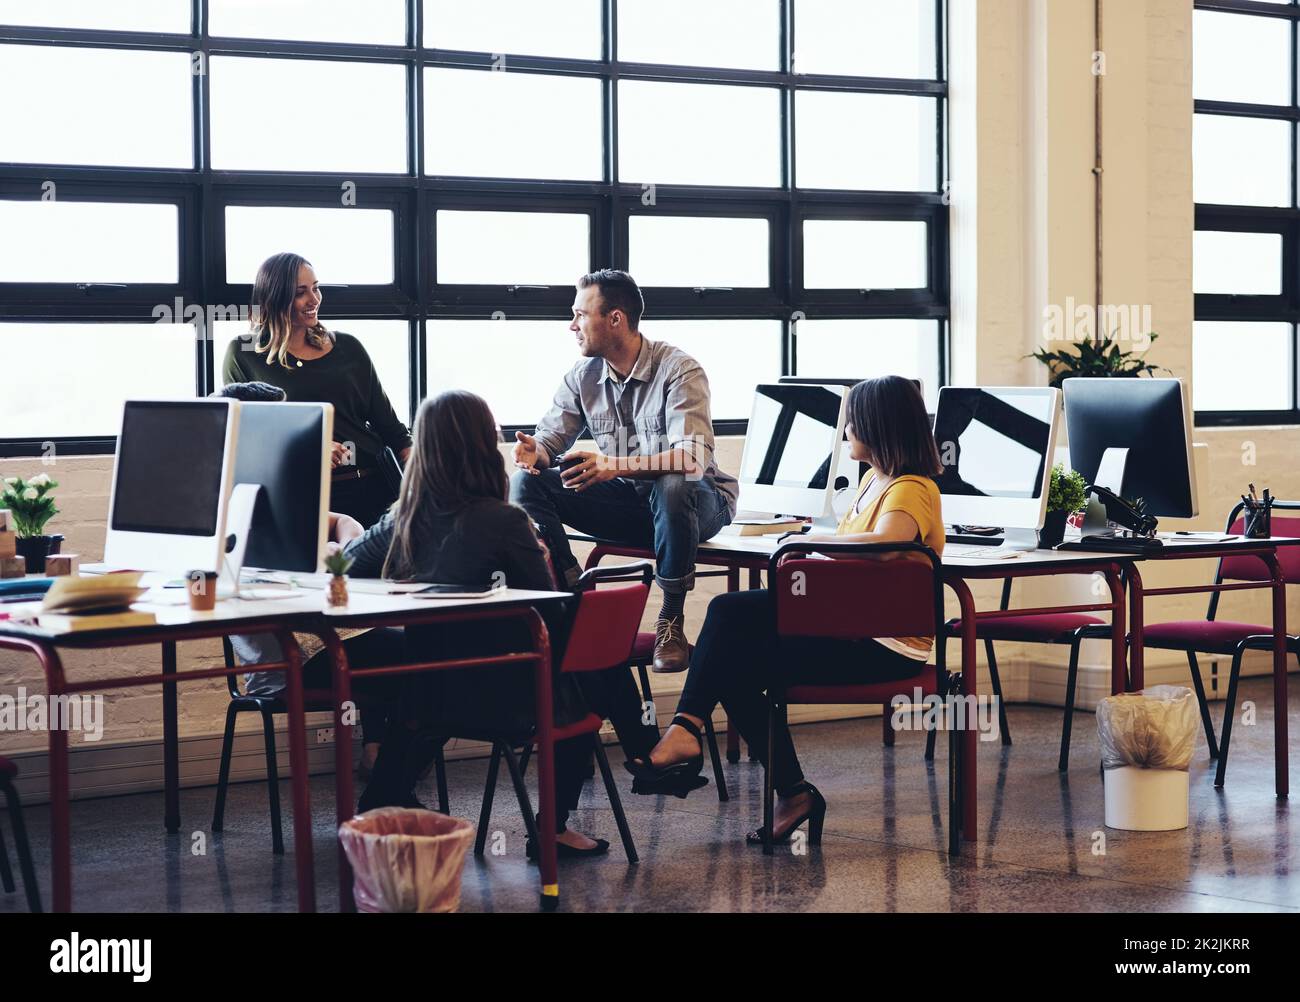 Je mehr Kreativität Sie nutzen, desto mehr haben Sie. Aufnahme kreativer Mitarbeiter, die in einem modernen Büro ein Meeting abhalten. Stockfoto